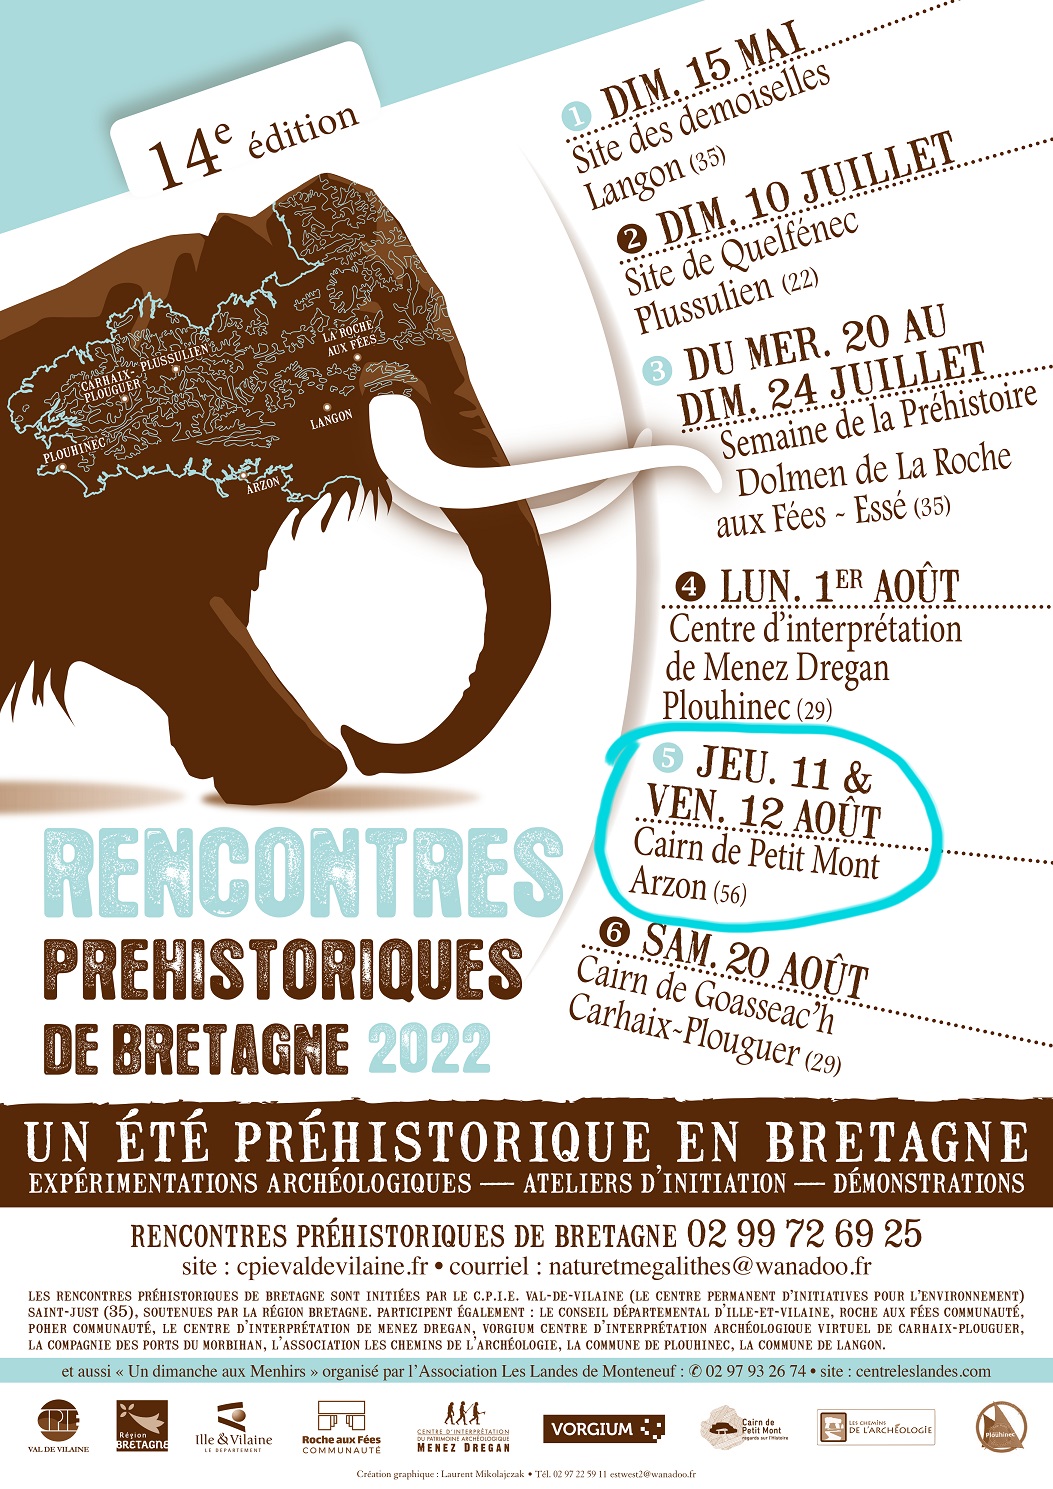 Rencontres Préhistoriques de Bretagne - Arzon (56)